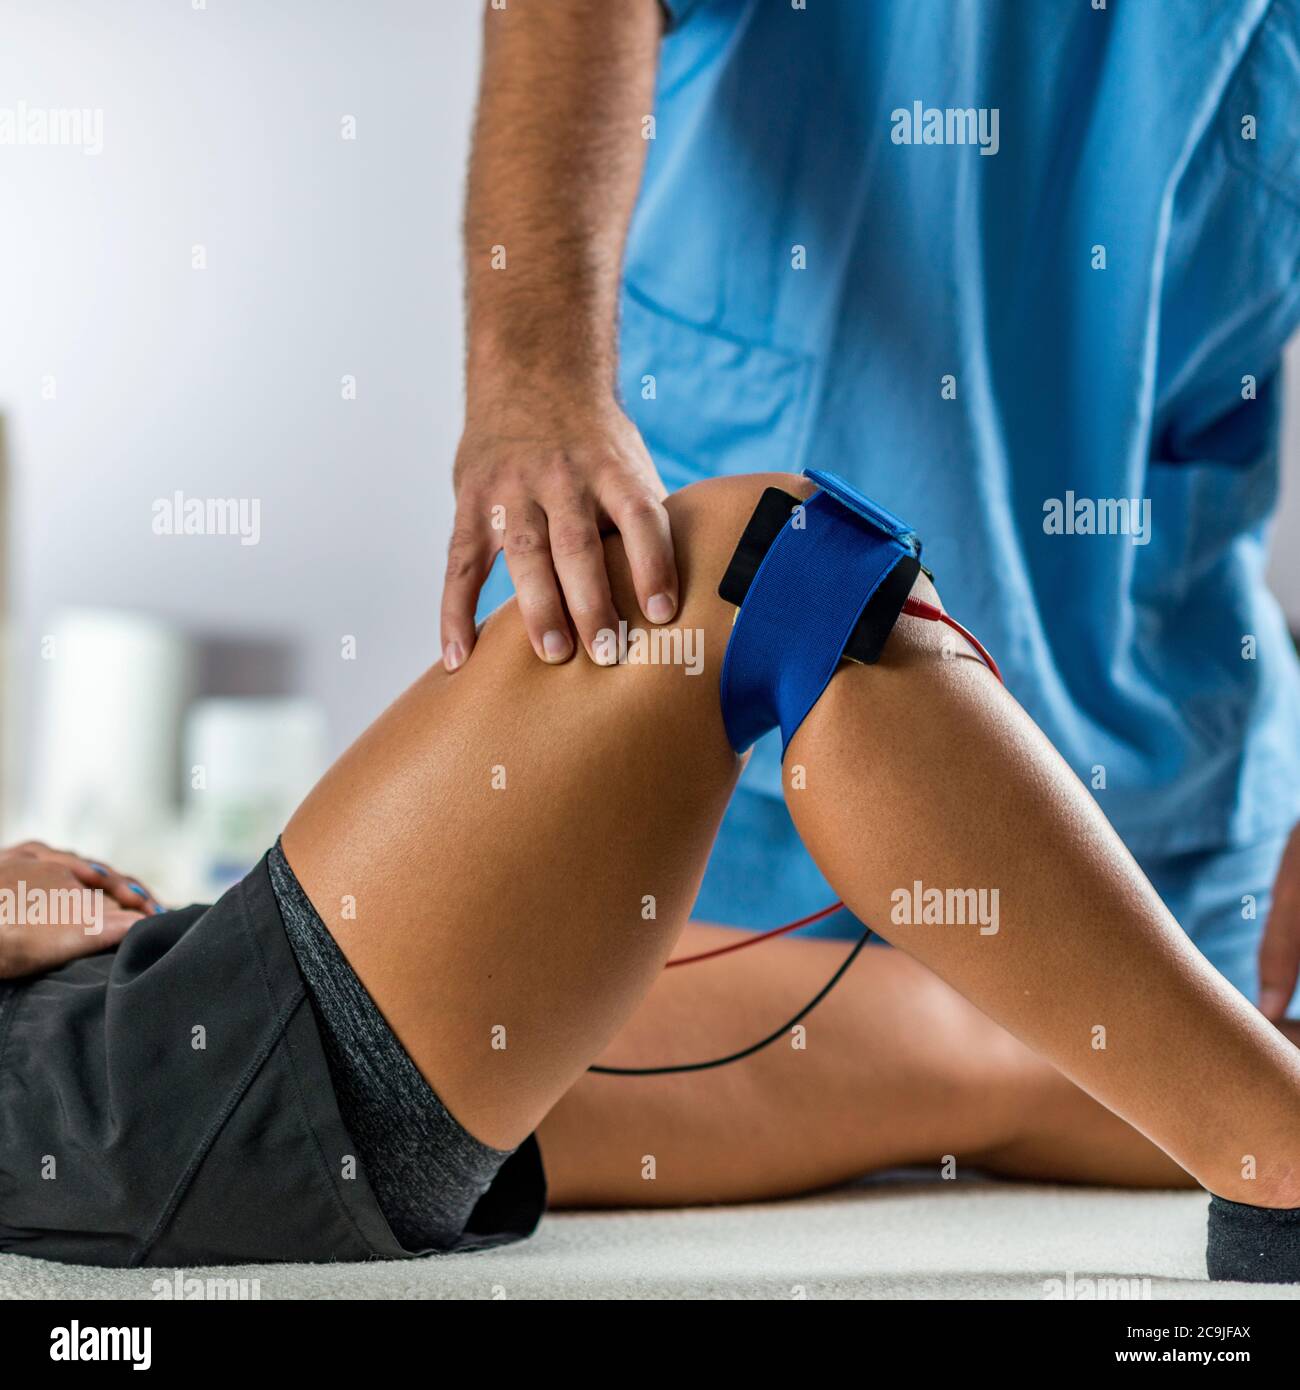 https://c8.alamy.com/compes/2c9jfax/estimulacion-muscular-electrica-en-terapia-fisica-el-terapeuta-coloca-los-electrodos-en-la-rodilla-del-paciente-2c9jfax.jpg